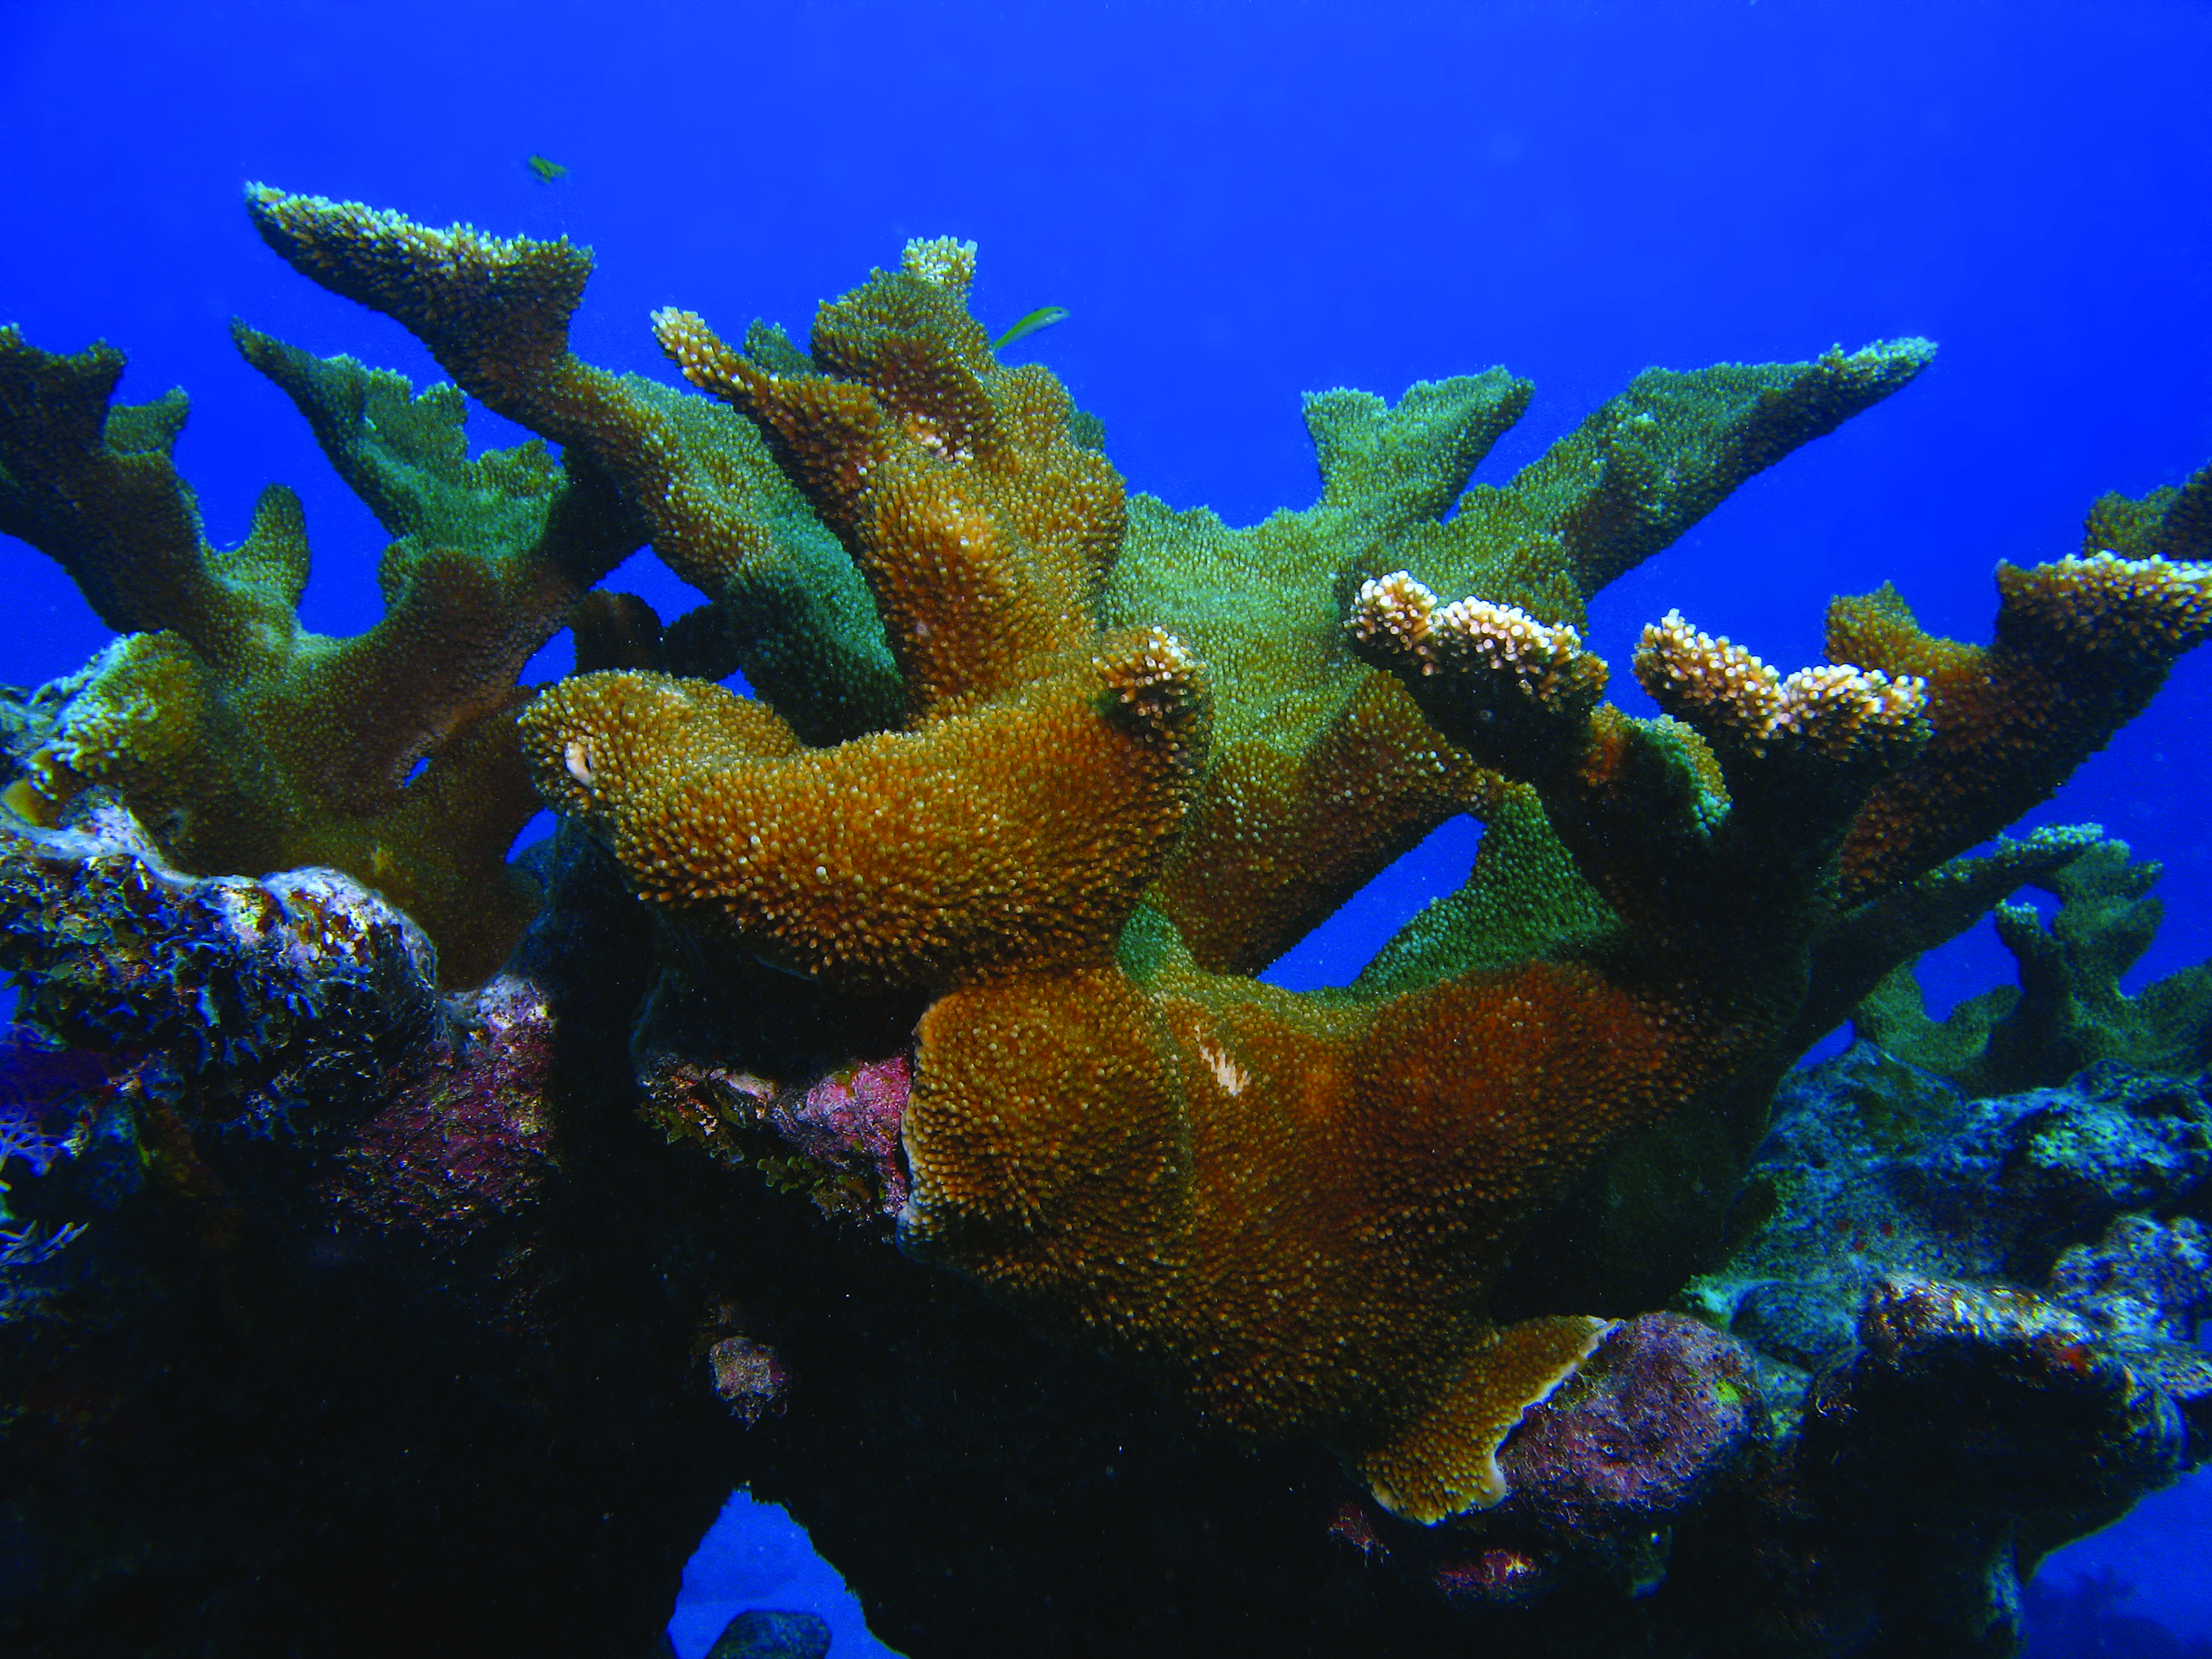 Elkhorn coral in Florida